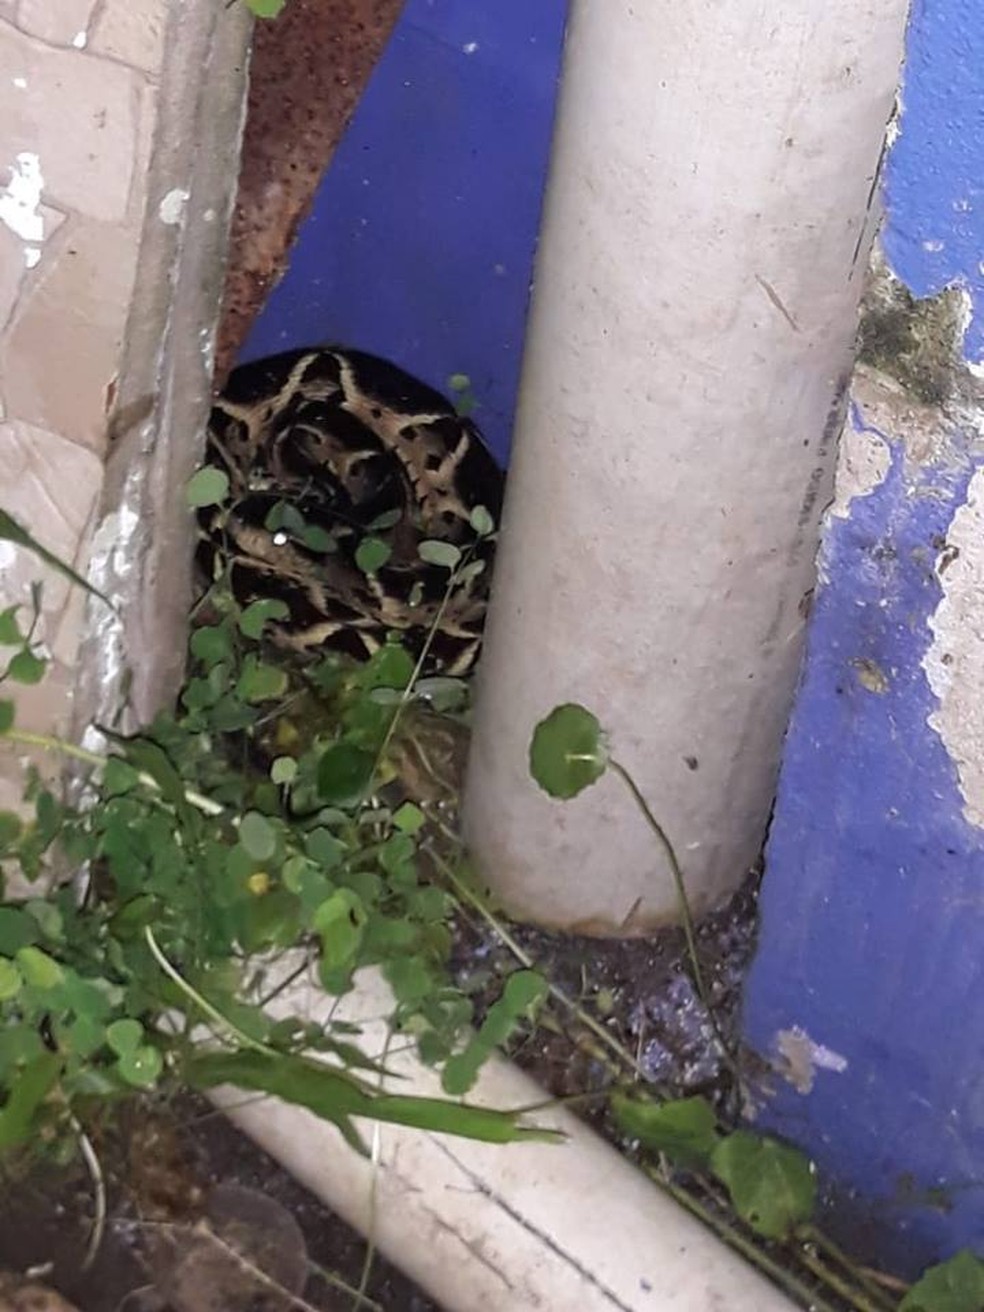 Serpente estava escondida no quintal de morador do bairro São Lourenço em Bertioga, SP — Foto: Arquivo Pessoal/Paulo Rodrigues